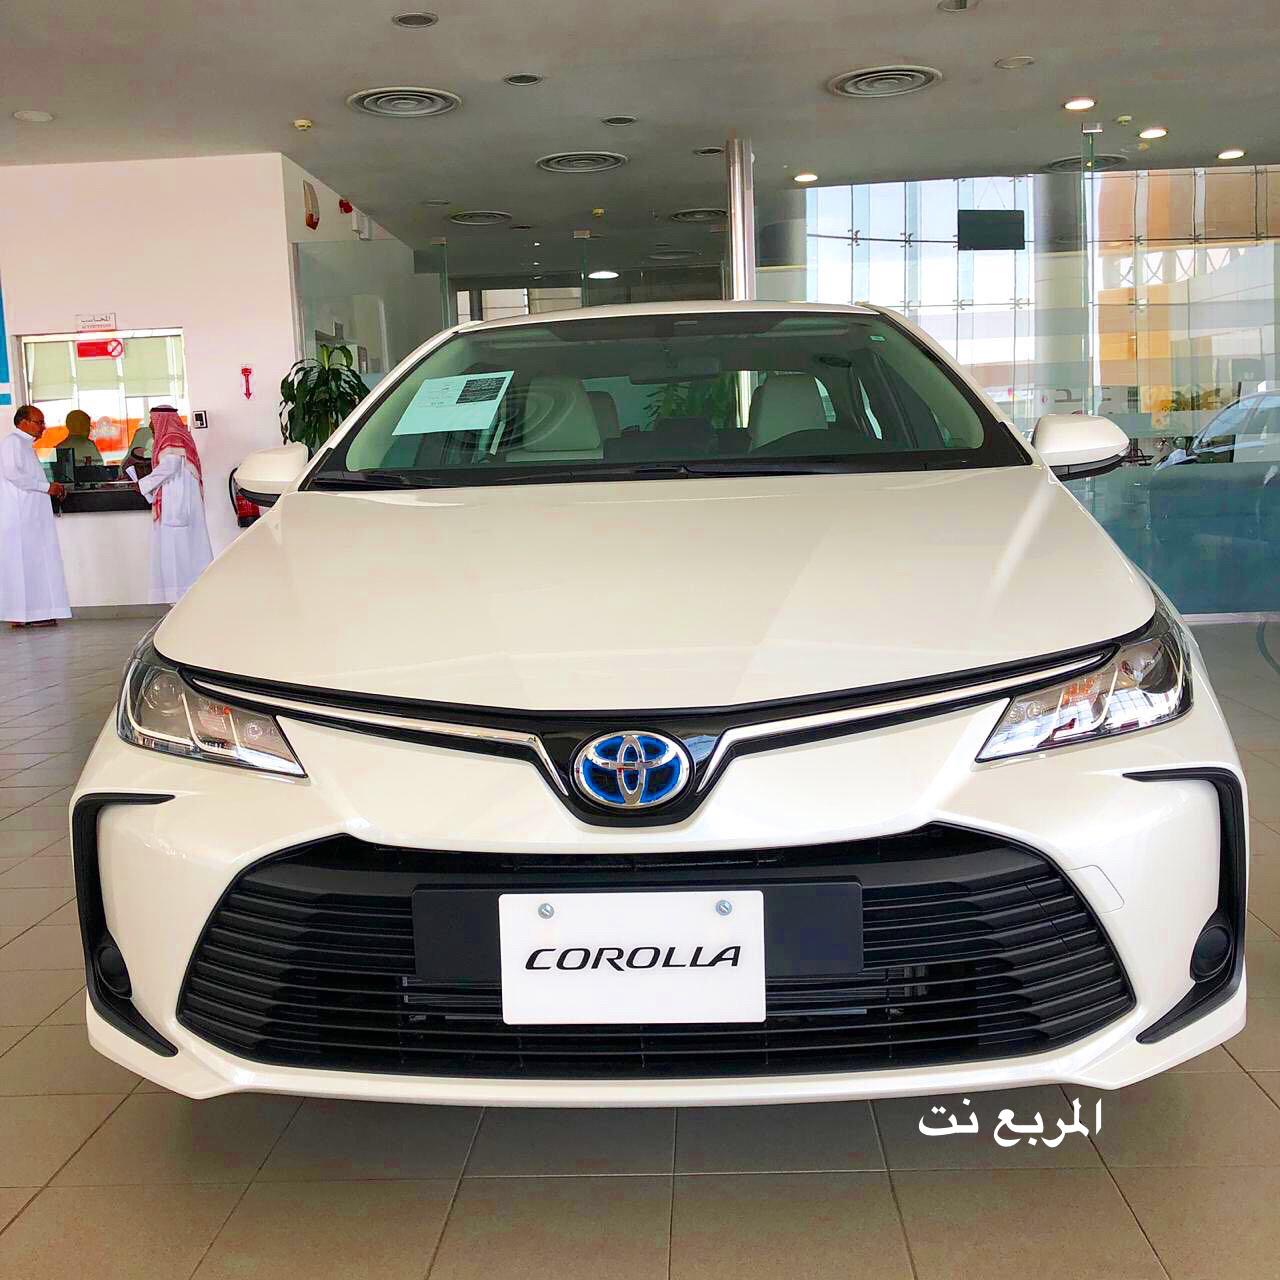 صور تويوتا كورولا 2020 الجديدة كلياً عالية الدقة Toyota Corolla 2